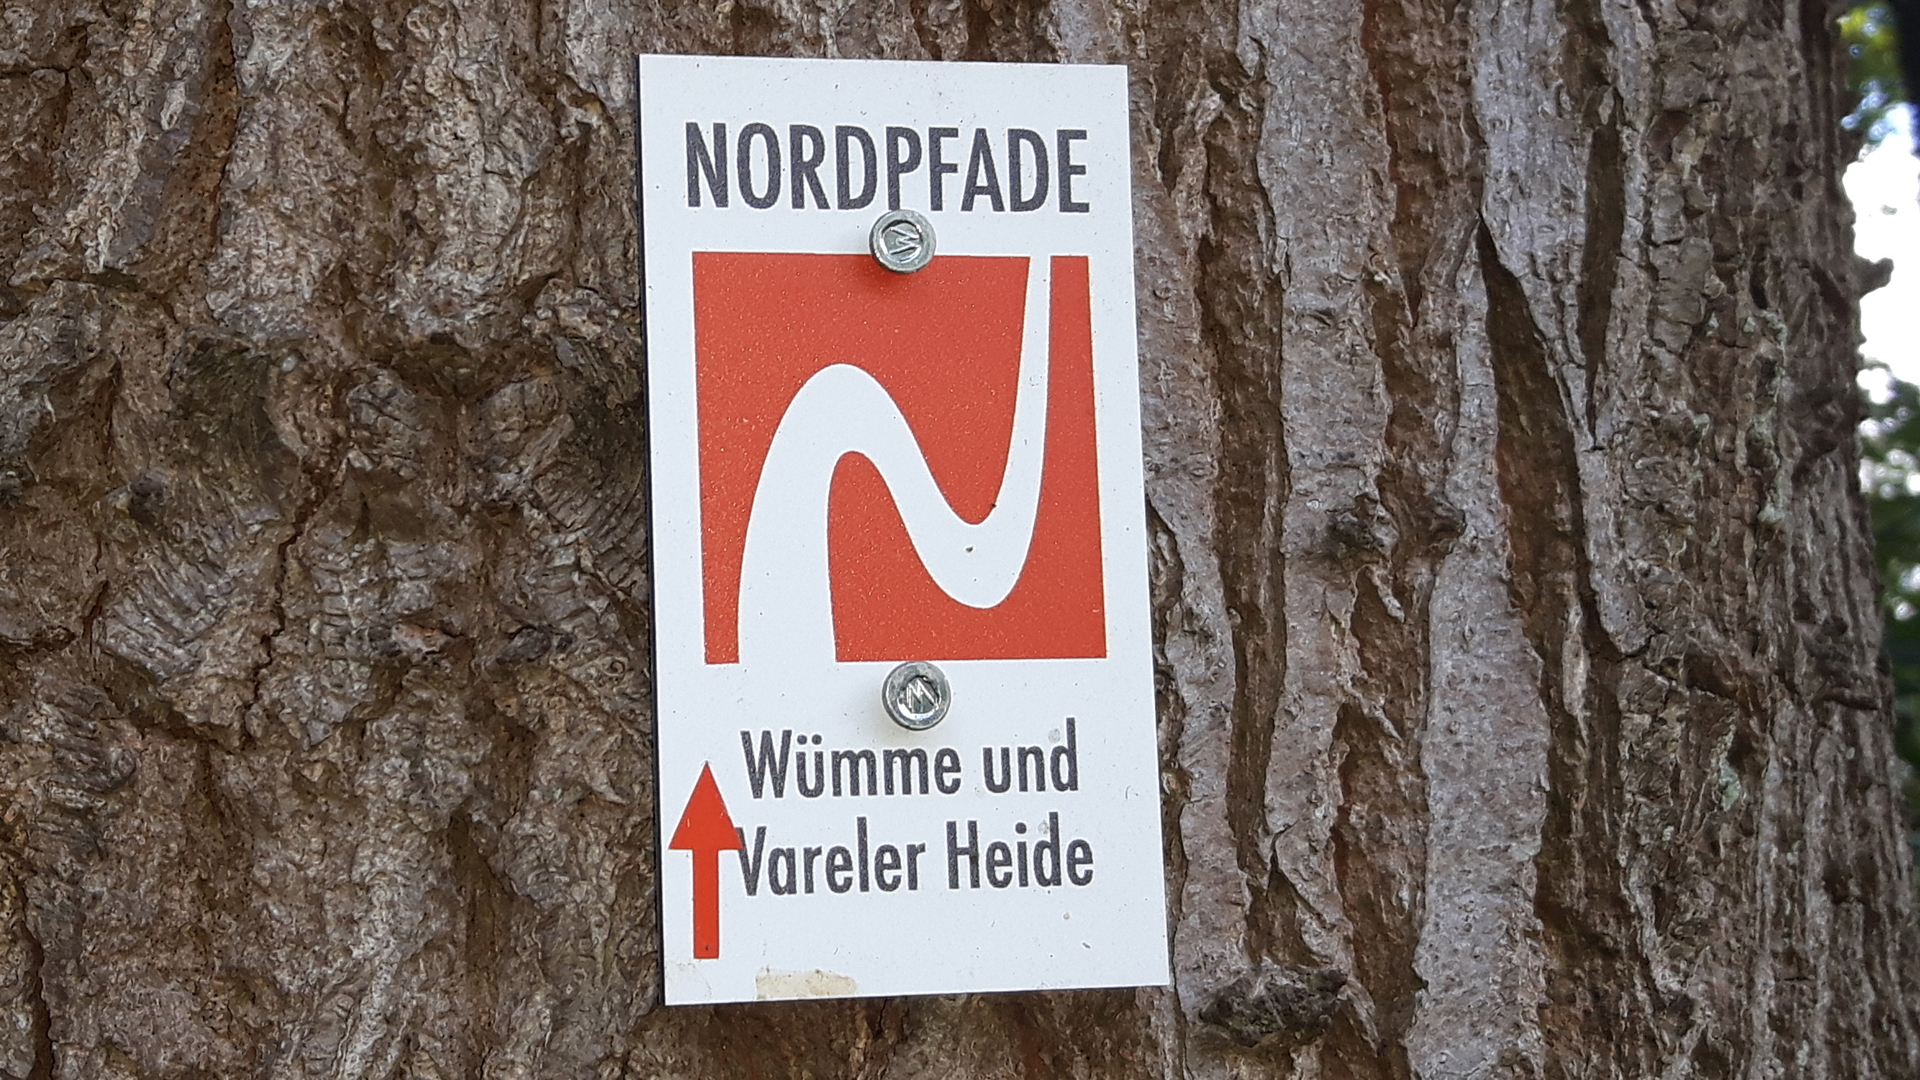 Dein Wegbegleiter für diesen NORDPFAD - das Logo vom NORDPFAD Wümme und Vareler Heide